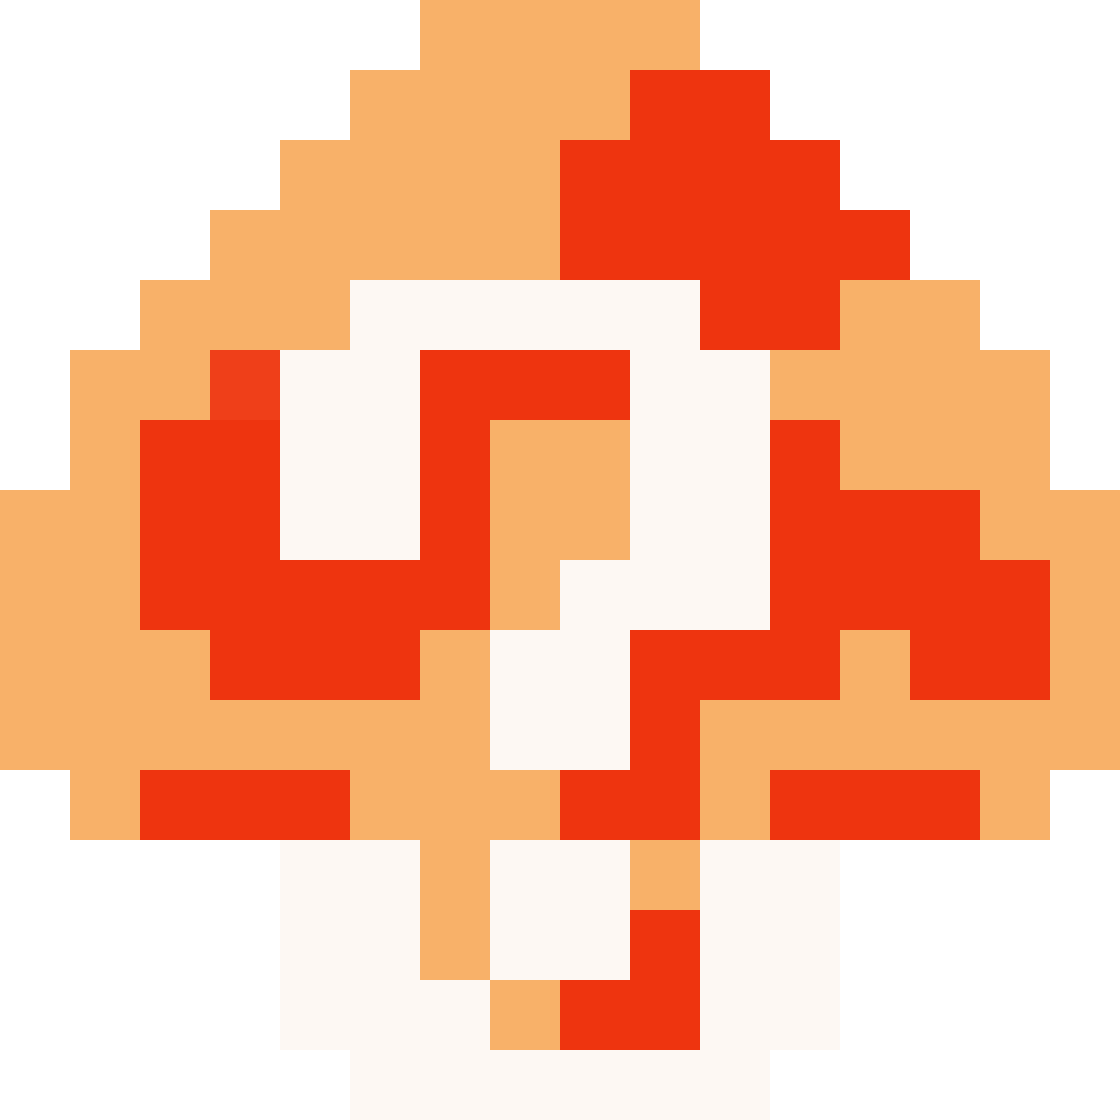 A Pixel Art Of A Mushroom